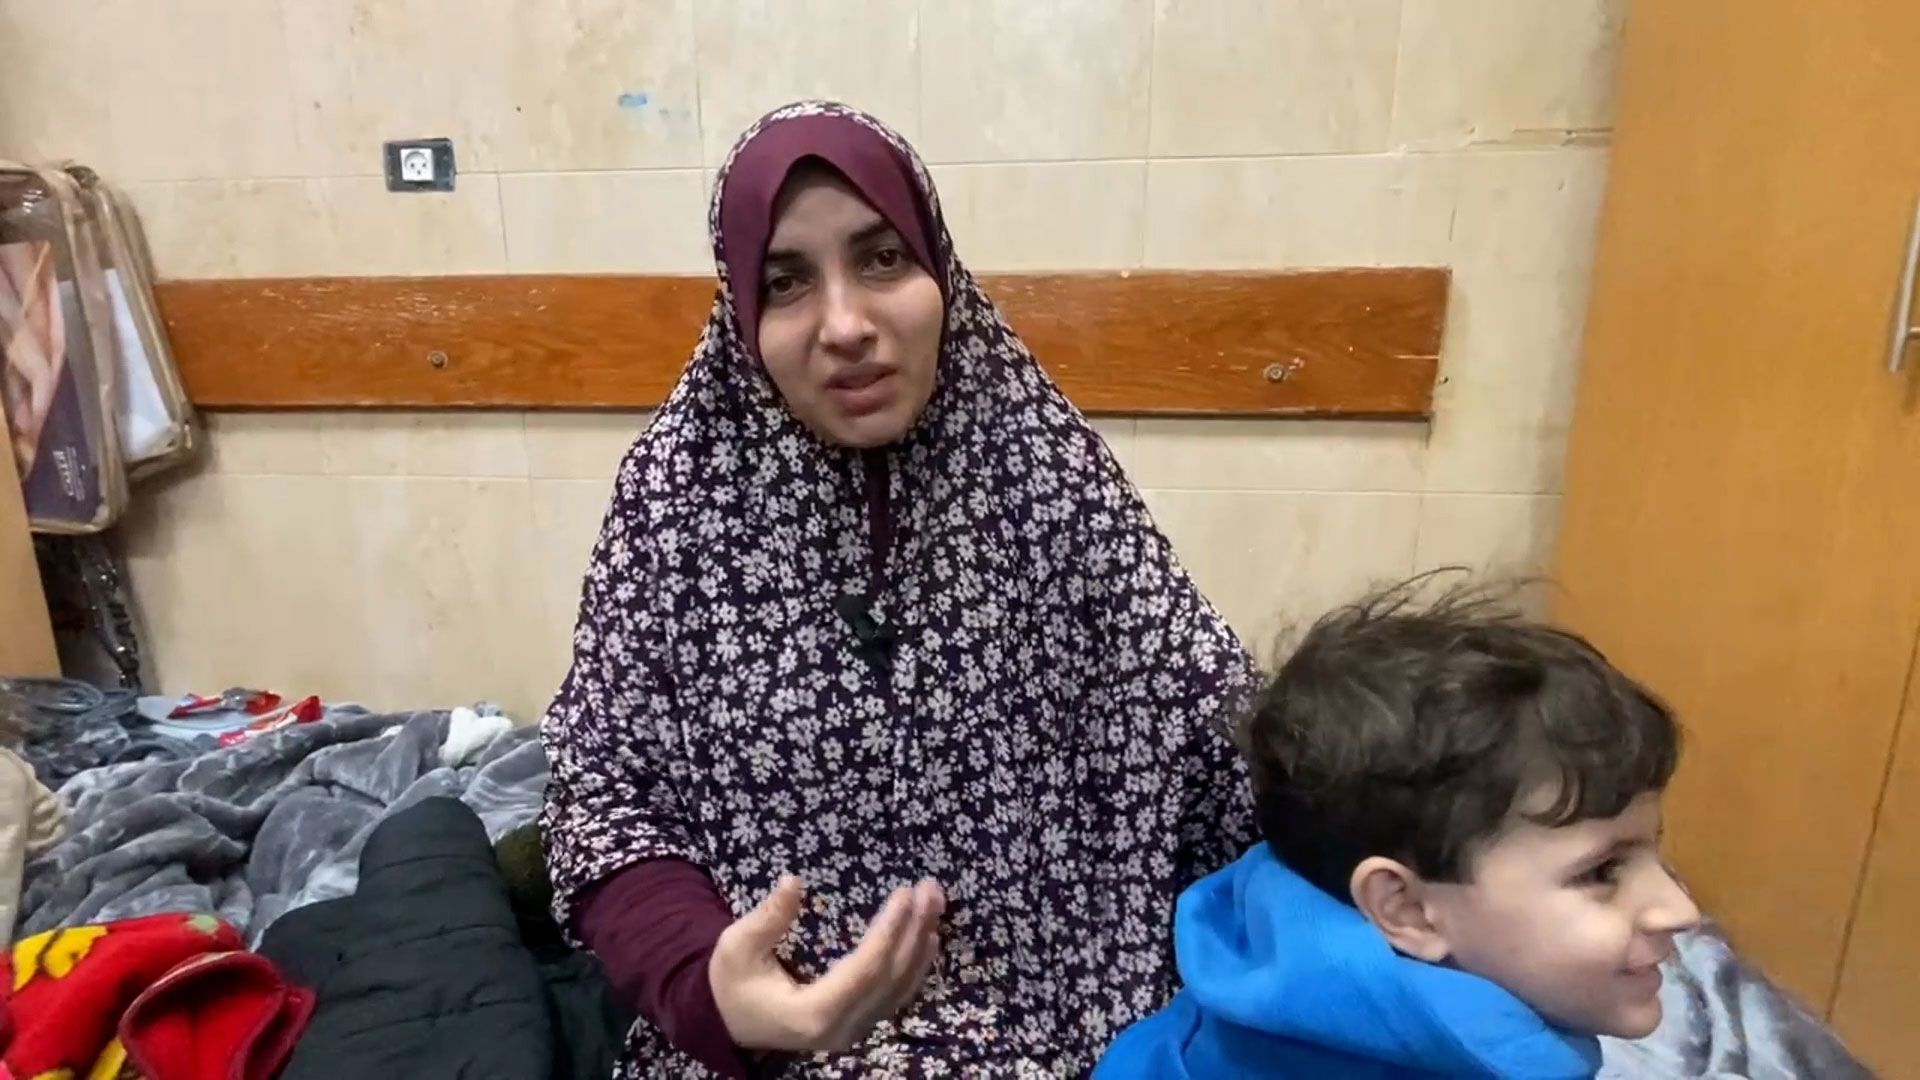 Hablando desde el Hospital de los Mártires de Al-Aqsa en Deir Al-Balah, Israa Hassan Ahmed al-Ashkar dijo a CNN que su familia había quedado atrapada en un edificio en la ciudad de Gaza durante una semana, mientras las fuerzas israelíes asediaban la zona.